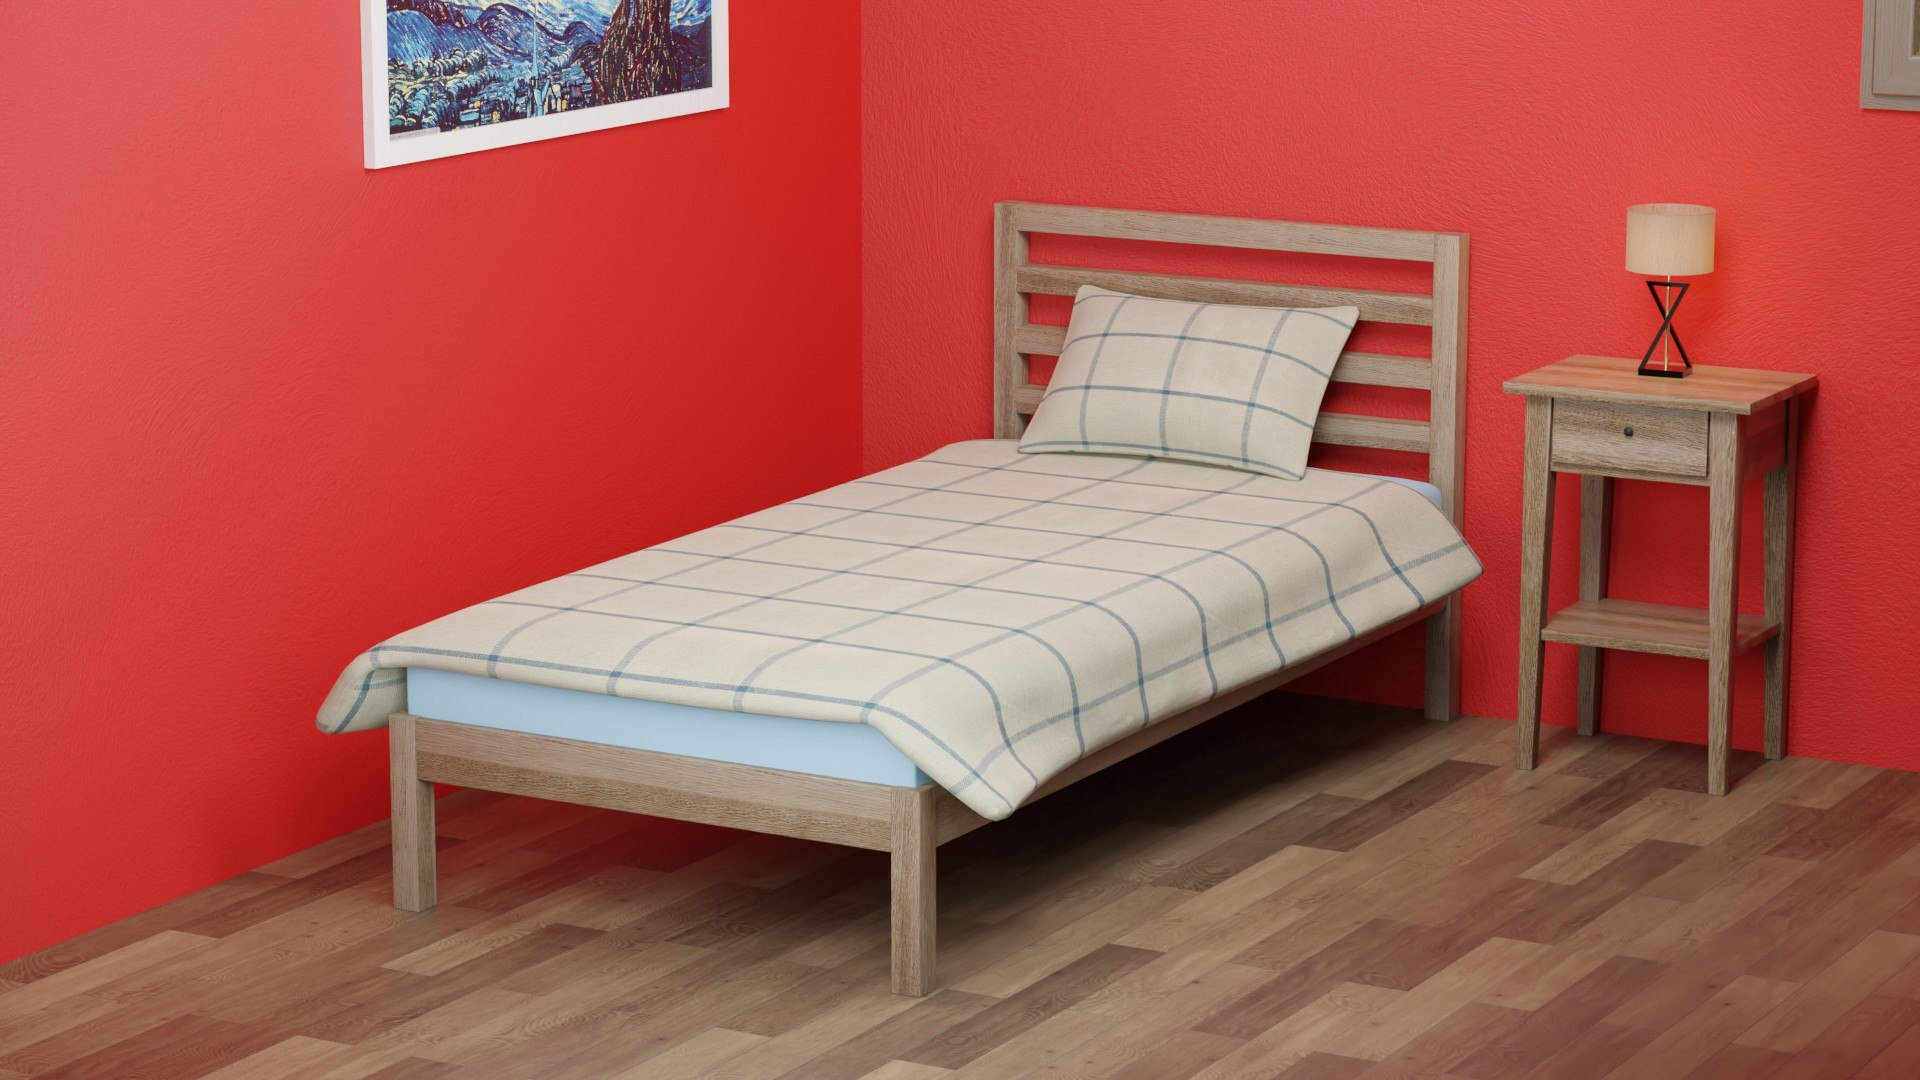 Bed - Wooden-1 3D - TurboSquid 2051379